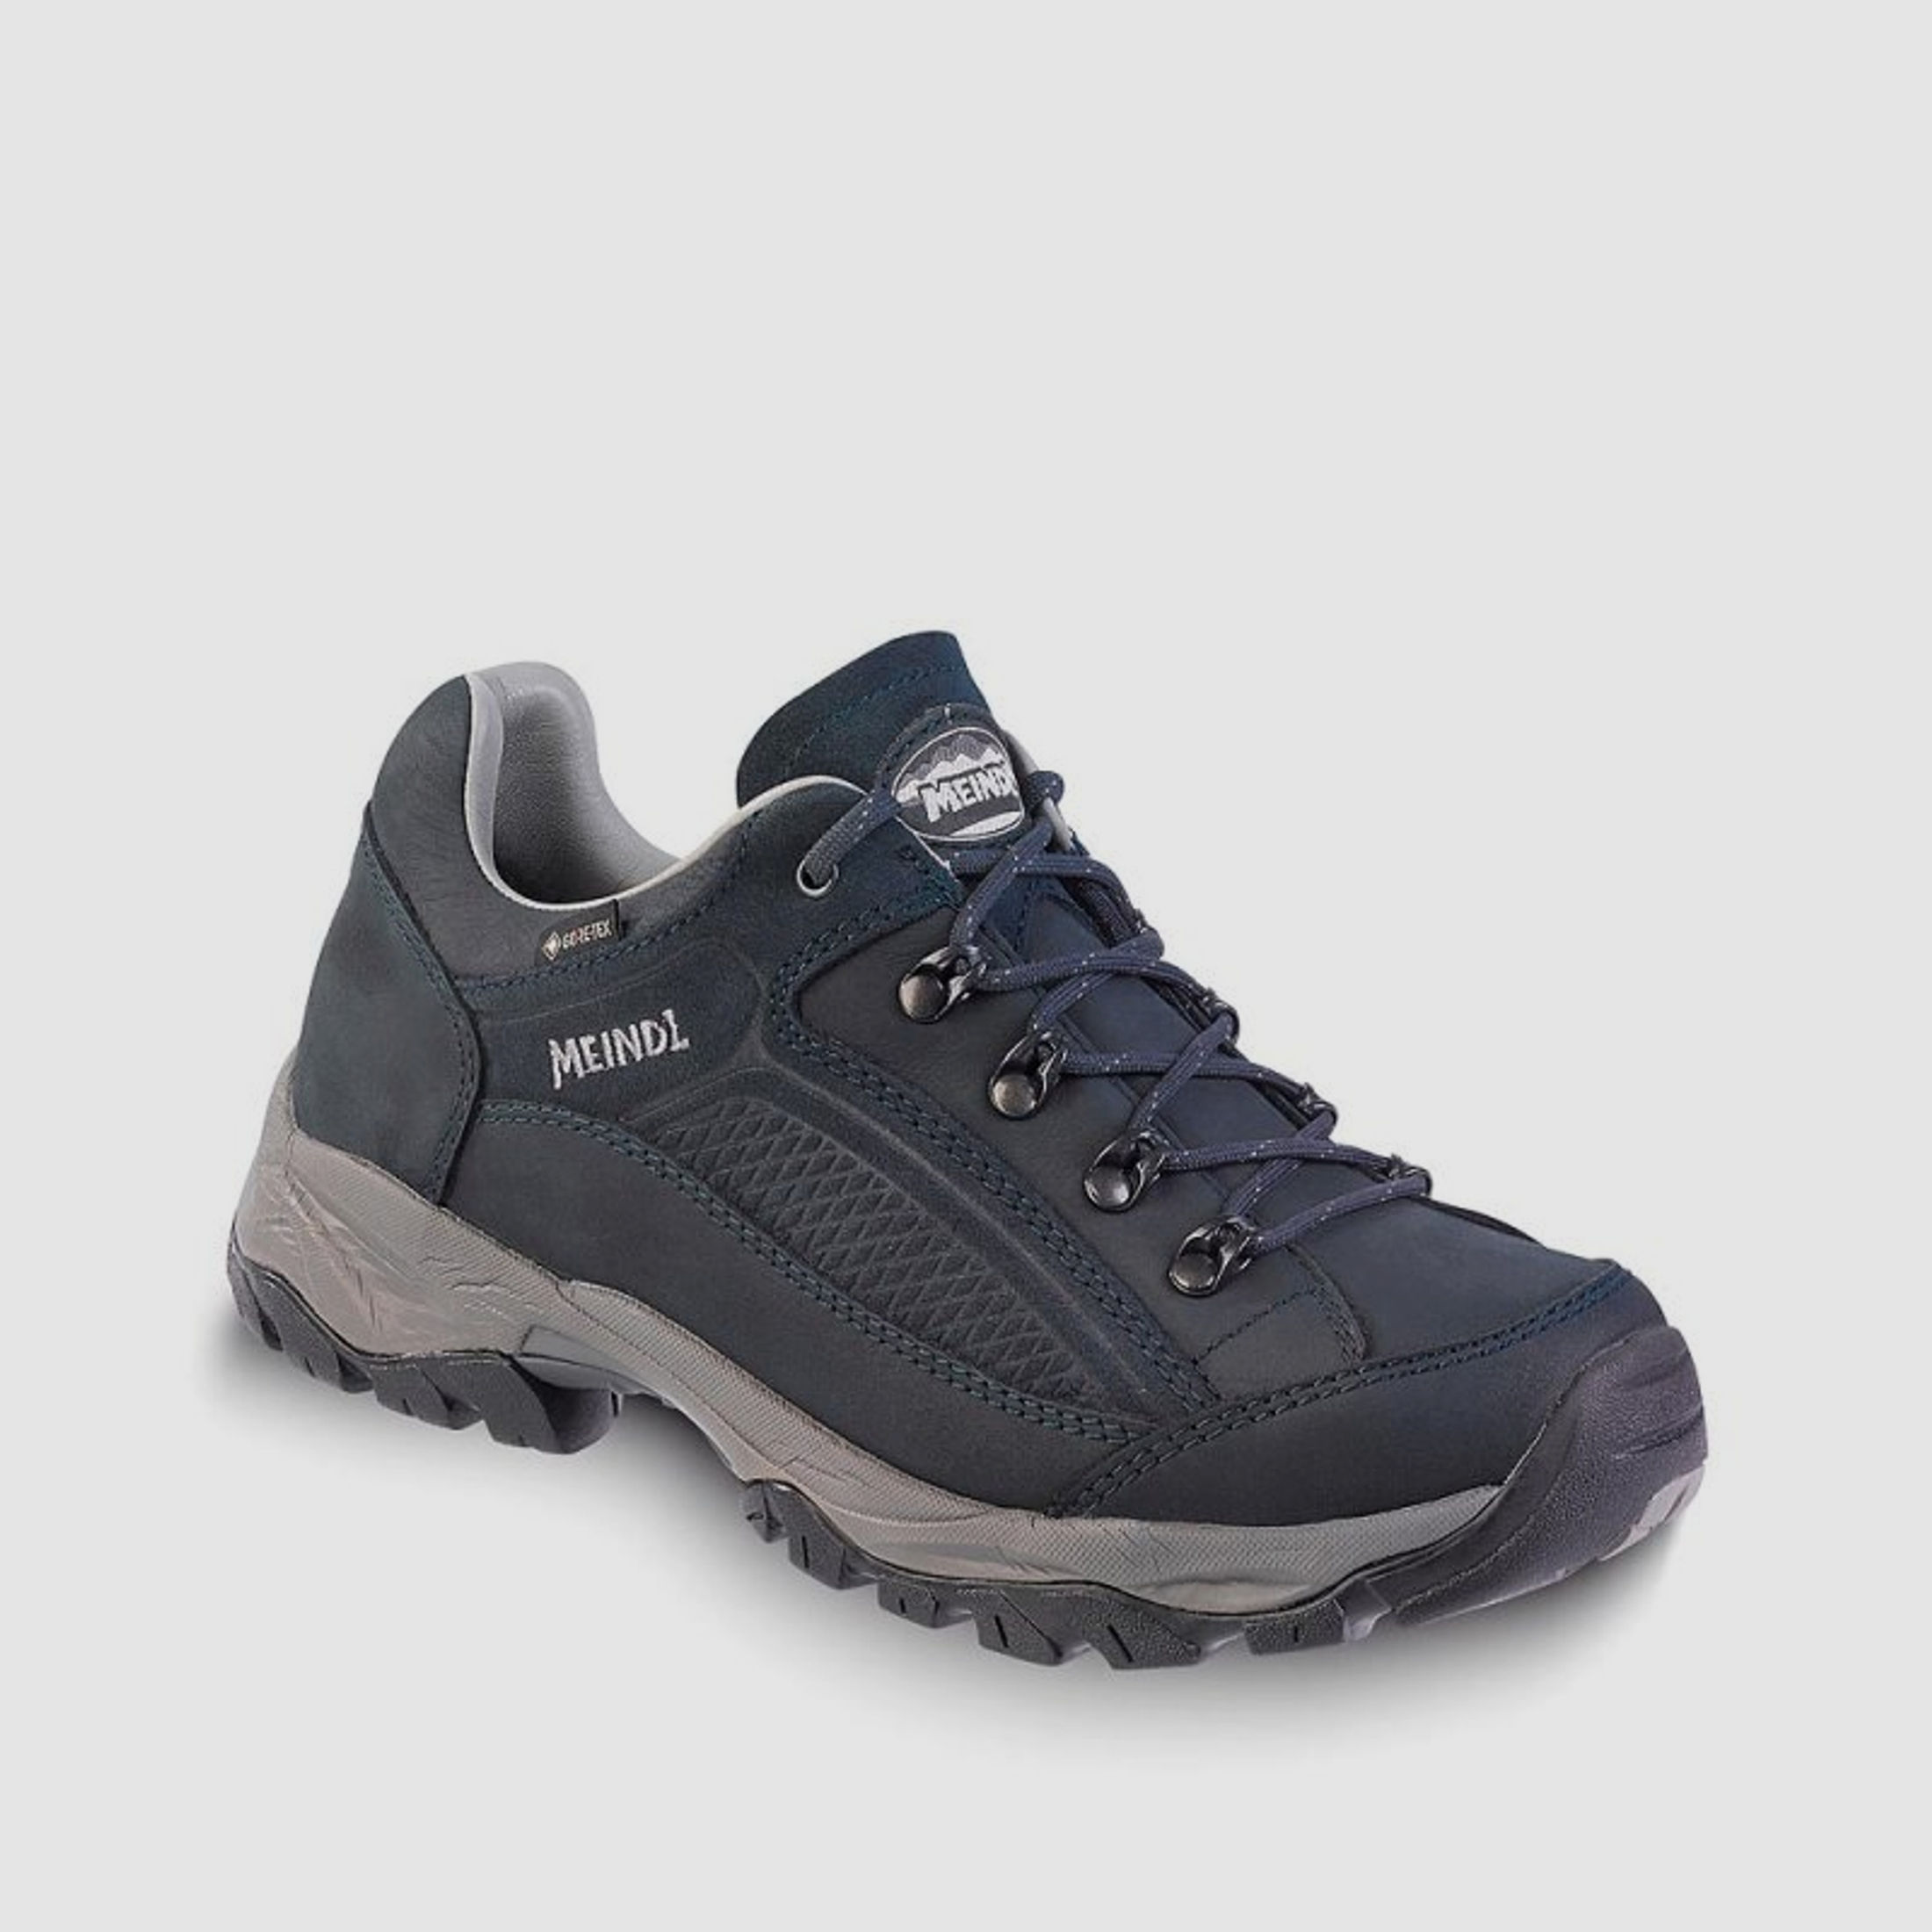 Meindl Damen Schuhe Atlanta GTX Nachtblau 5,5 UK - 39 EU